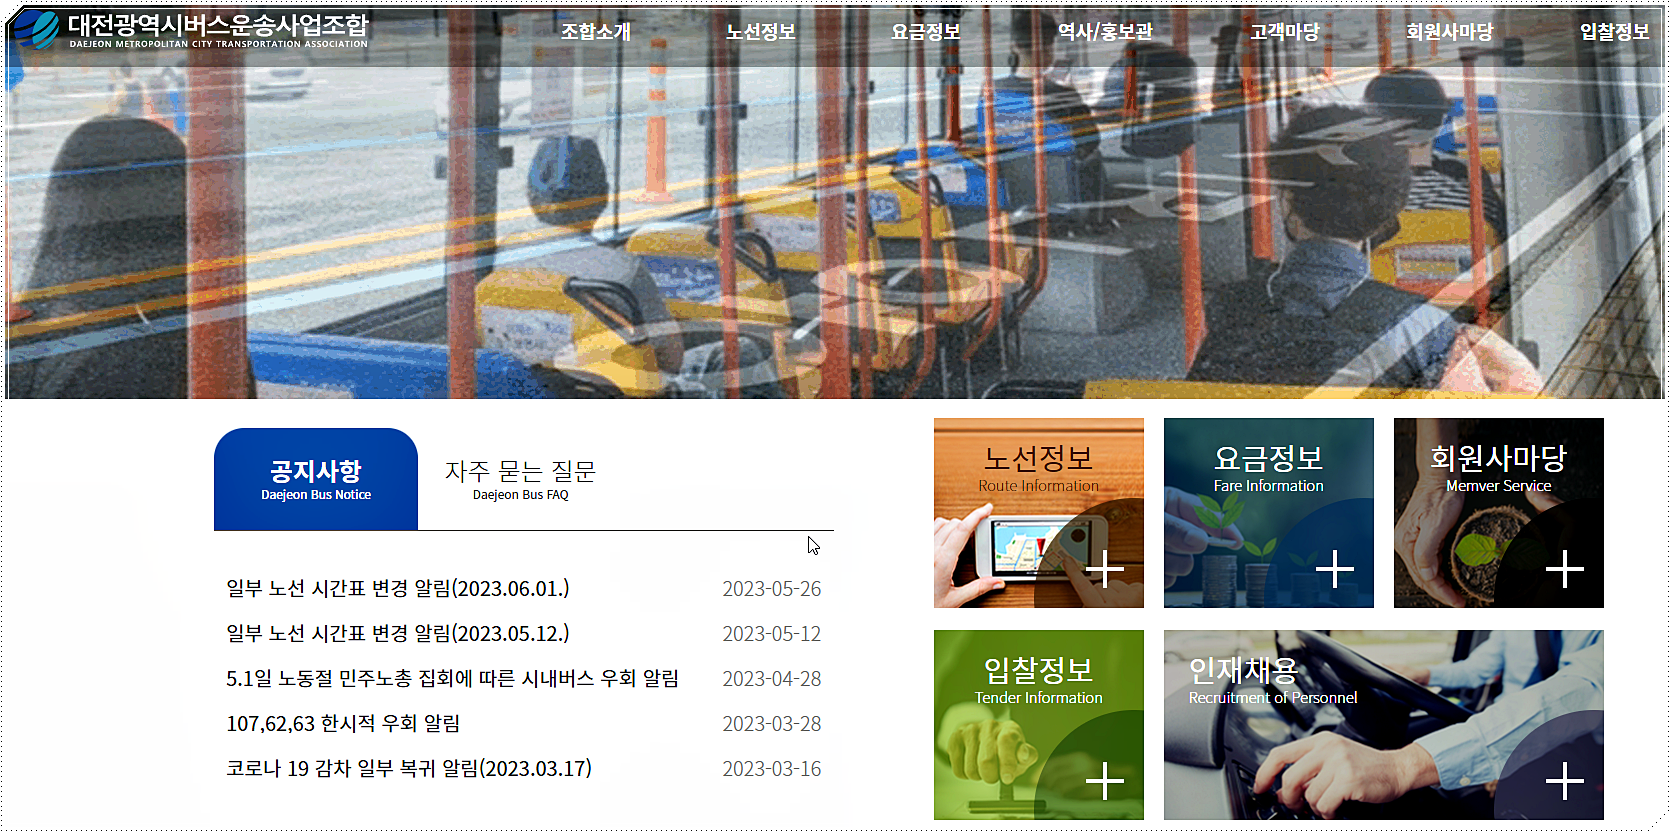 대전버스운송사업조합 홈페이지